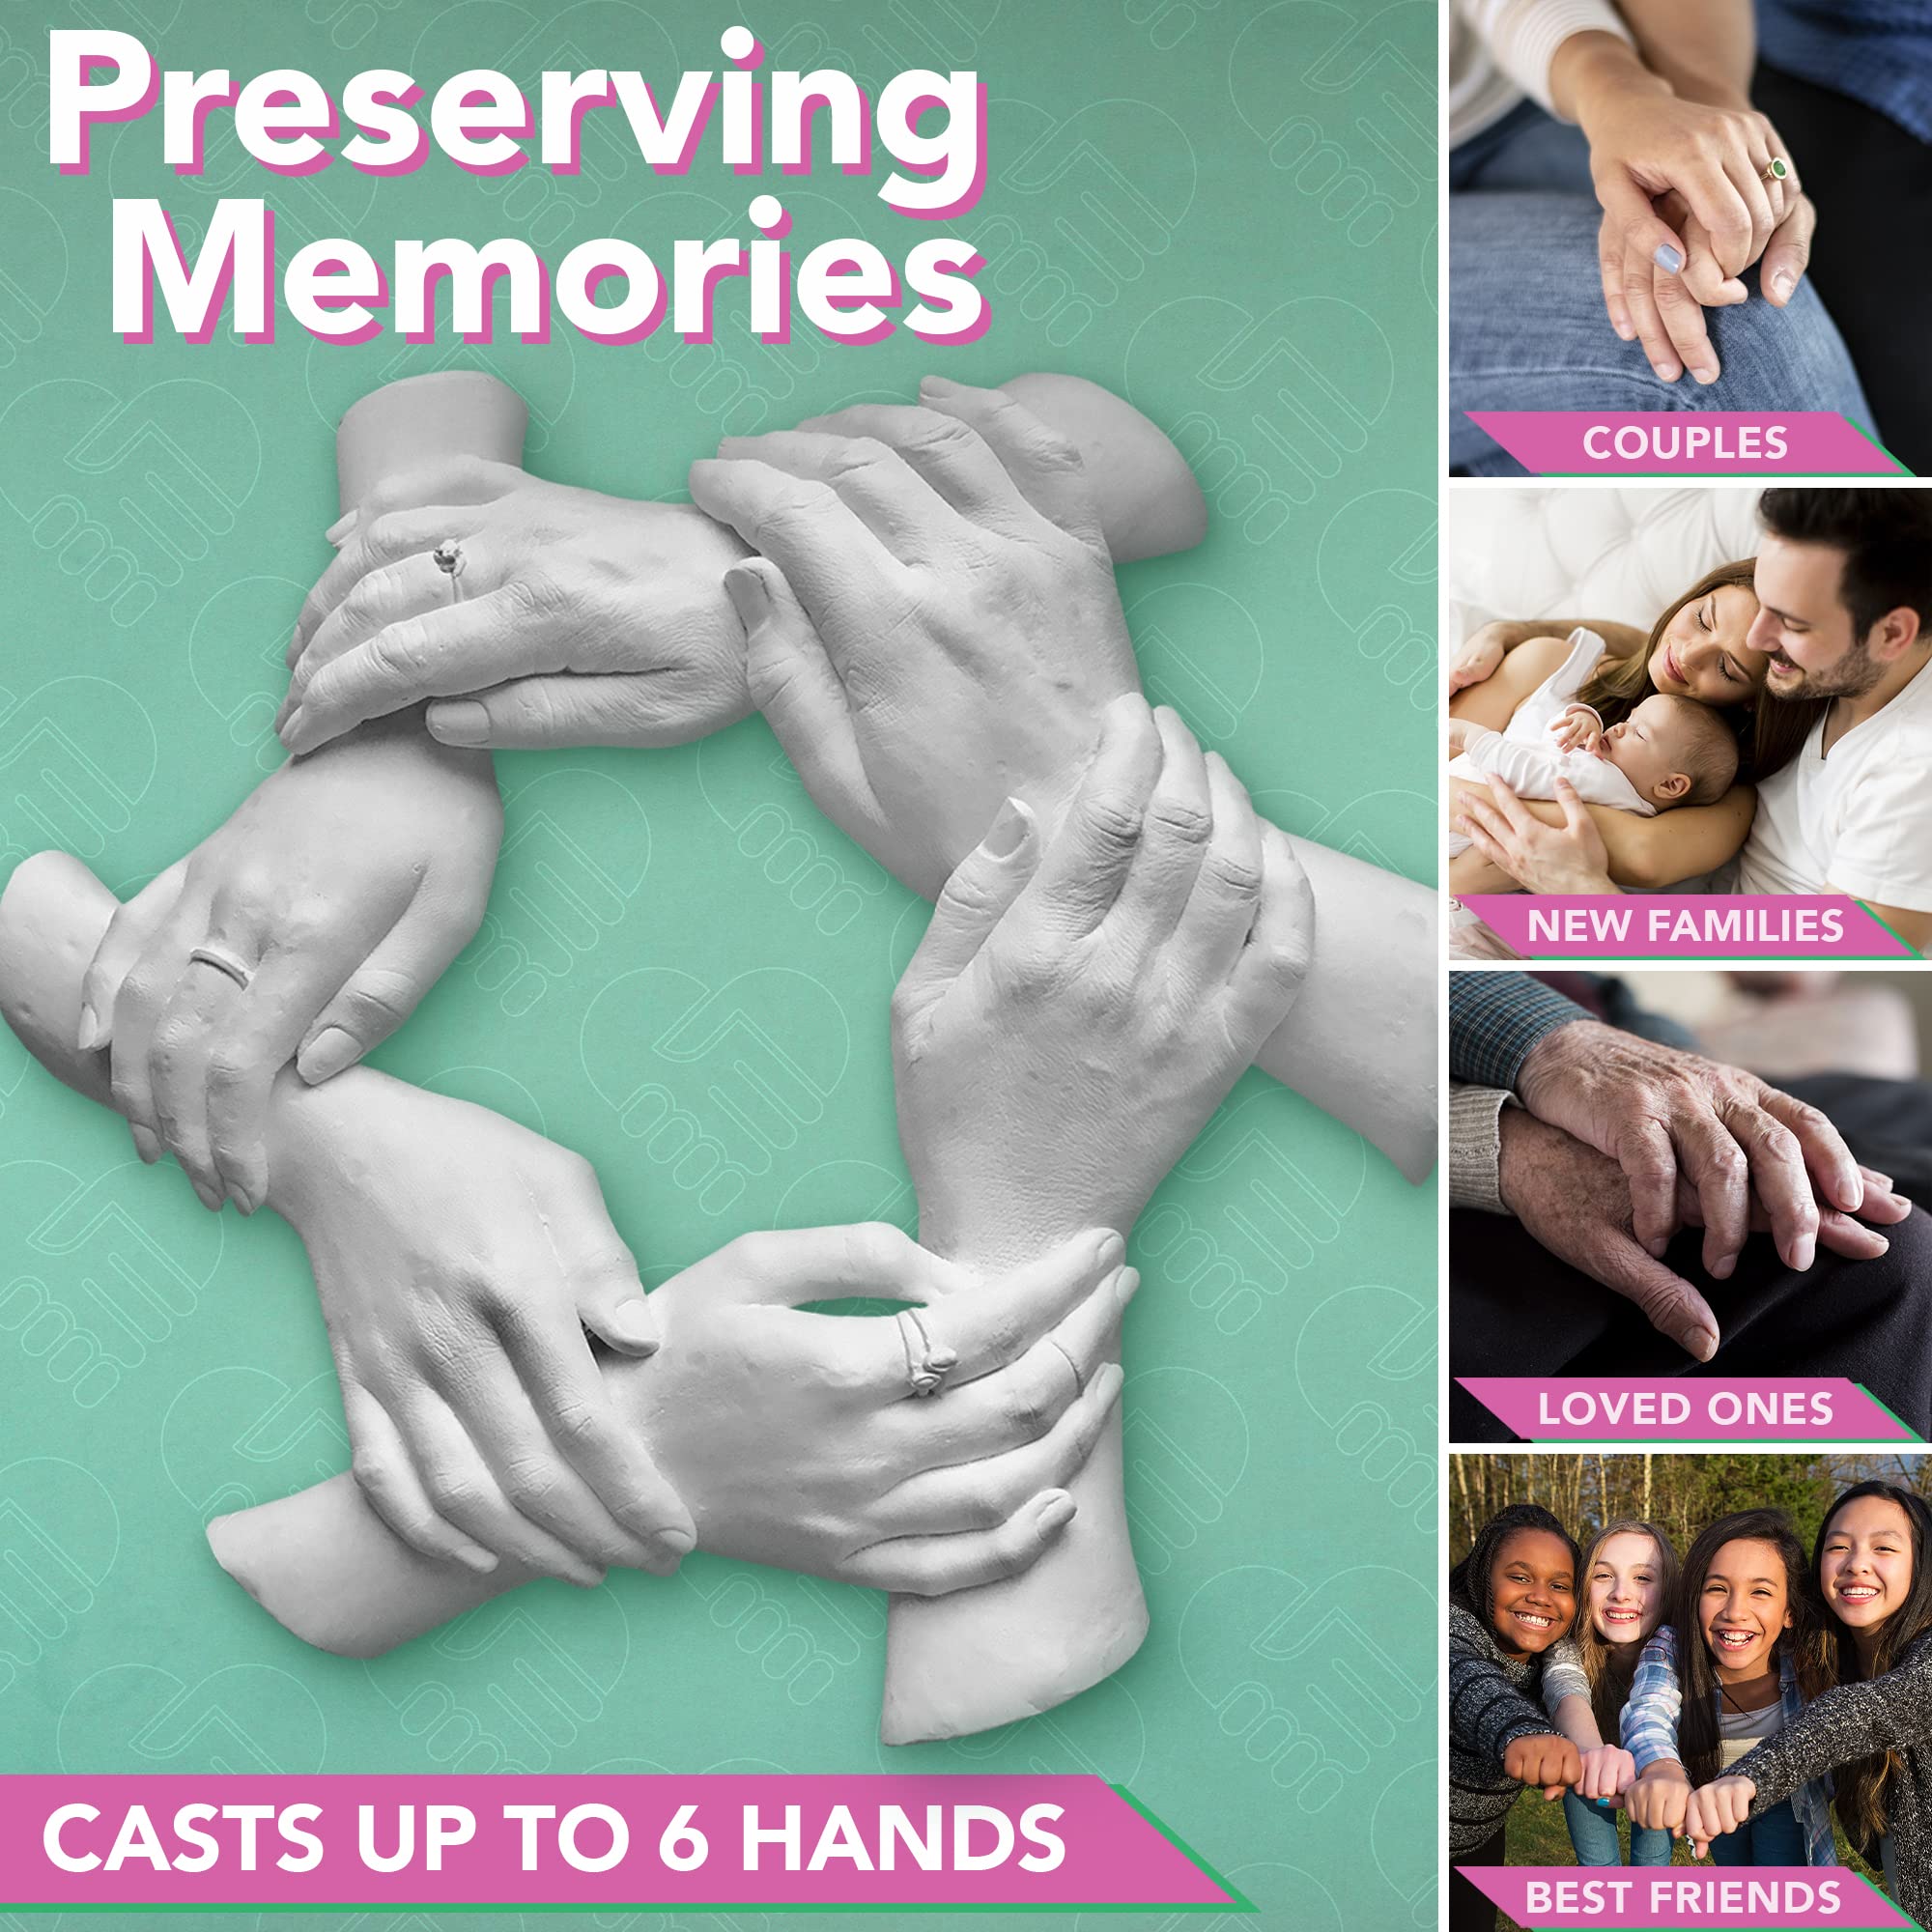 Family Hand Casting Kit: Luna Bean Family Hands Casting Kit – Luna Bean -  Casting Keepsakes